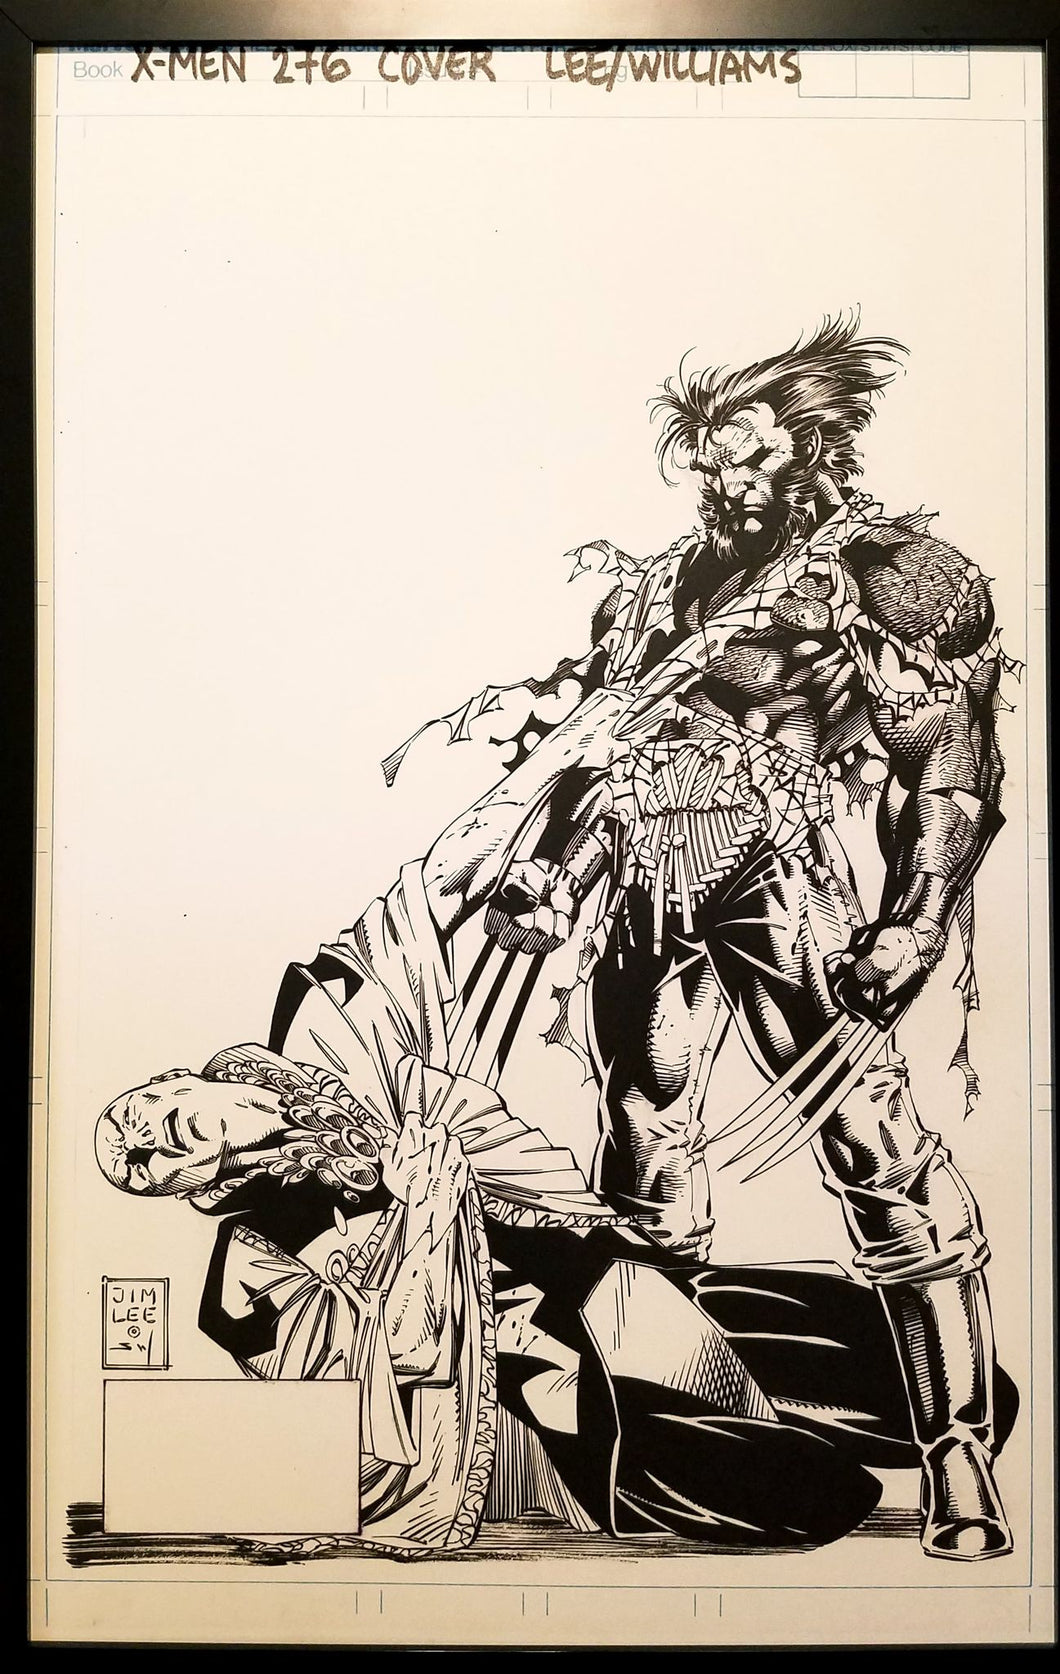 X-Men #276 Wolverine by Jim Lee 11x17 FRAMED Original Art Poster Marvel Comics